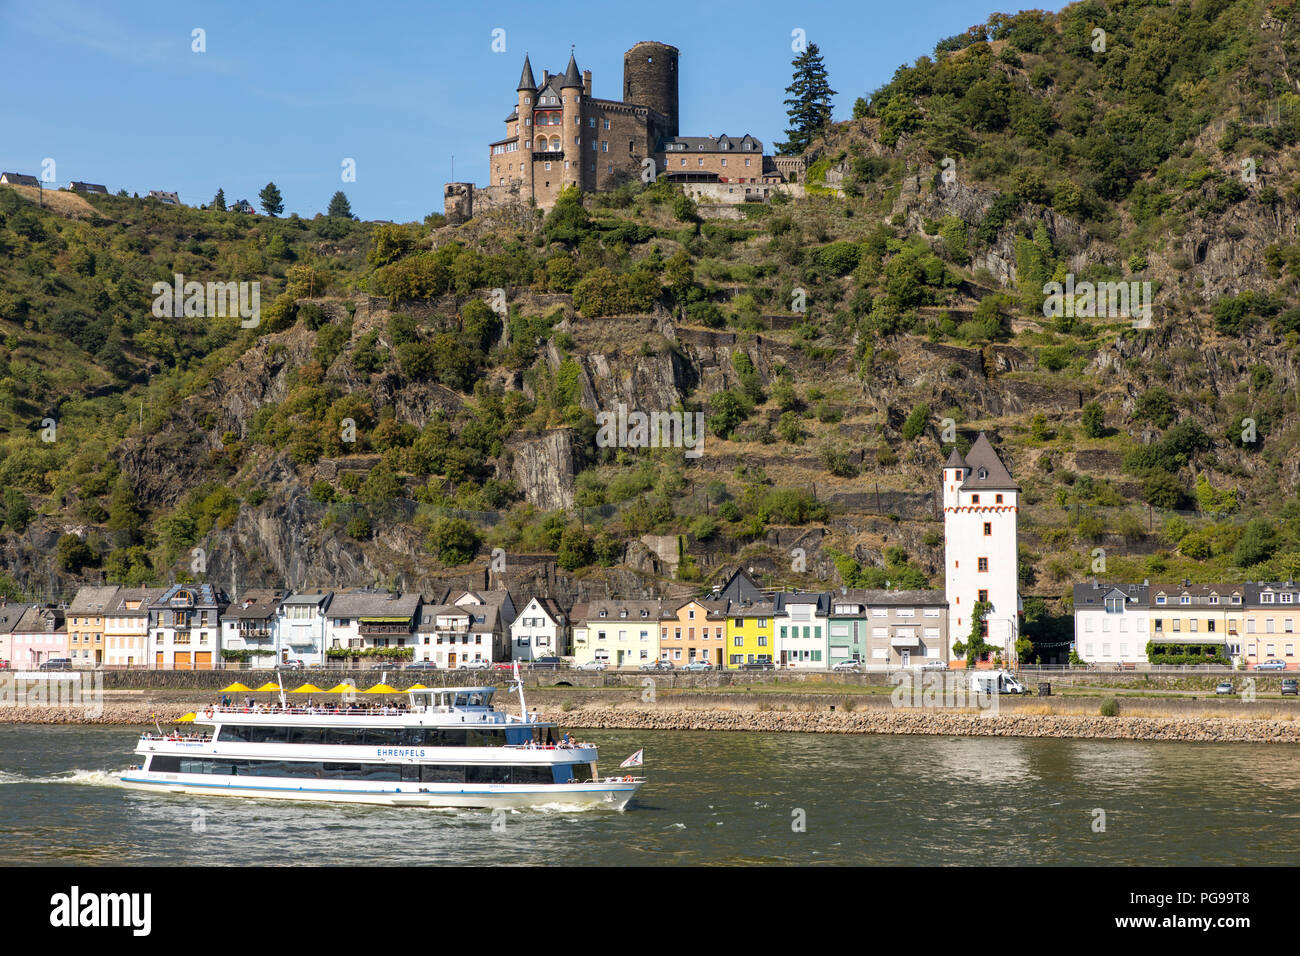 Château Katz, au-dessus de St Goarshausen, Rheingau, dans le patrimoine mondial de l'UNESCO, la Vallée du Haut-Rhin moyen river cruise ship, Banque D'Images